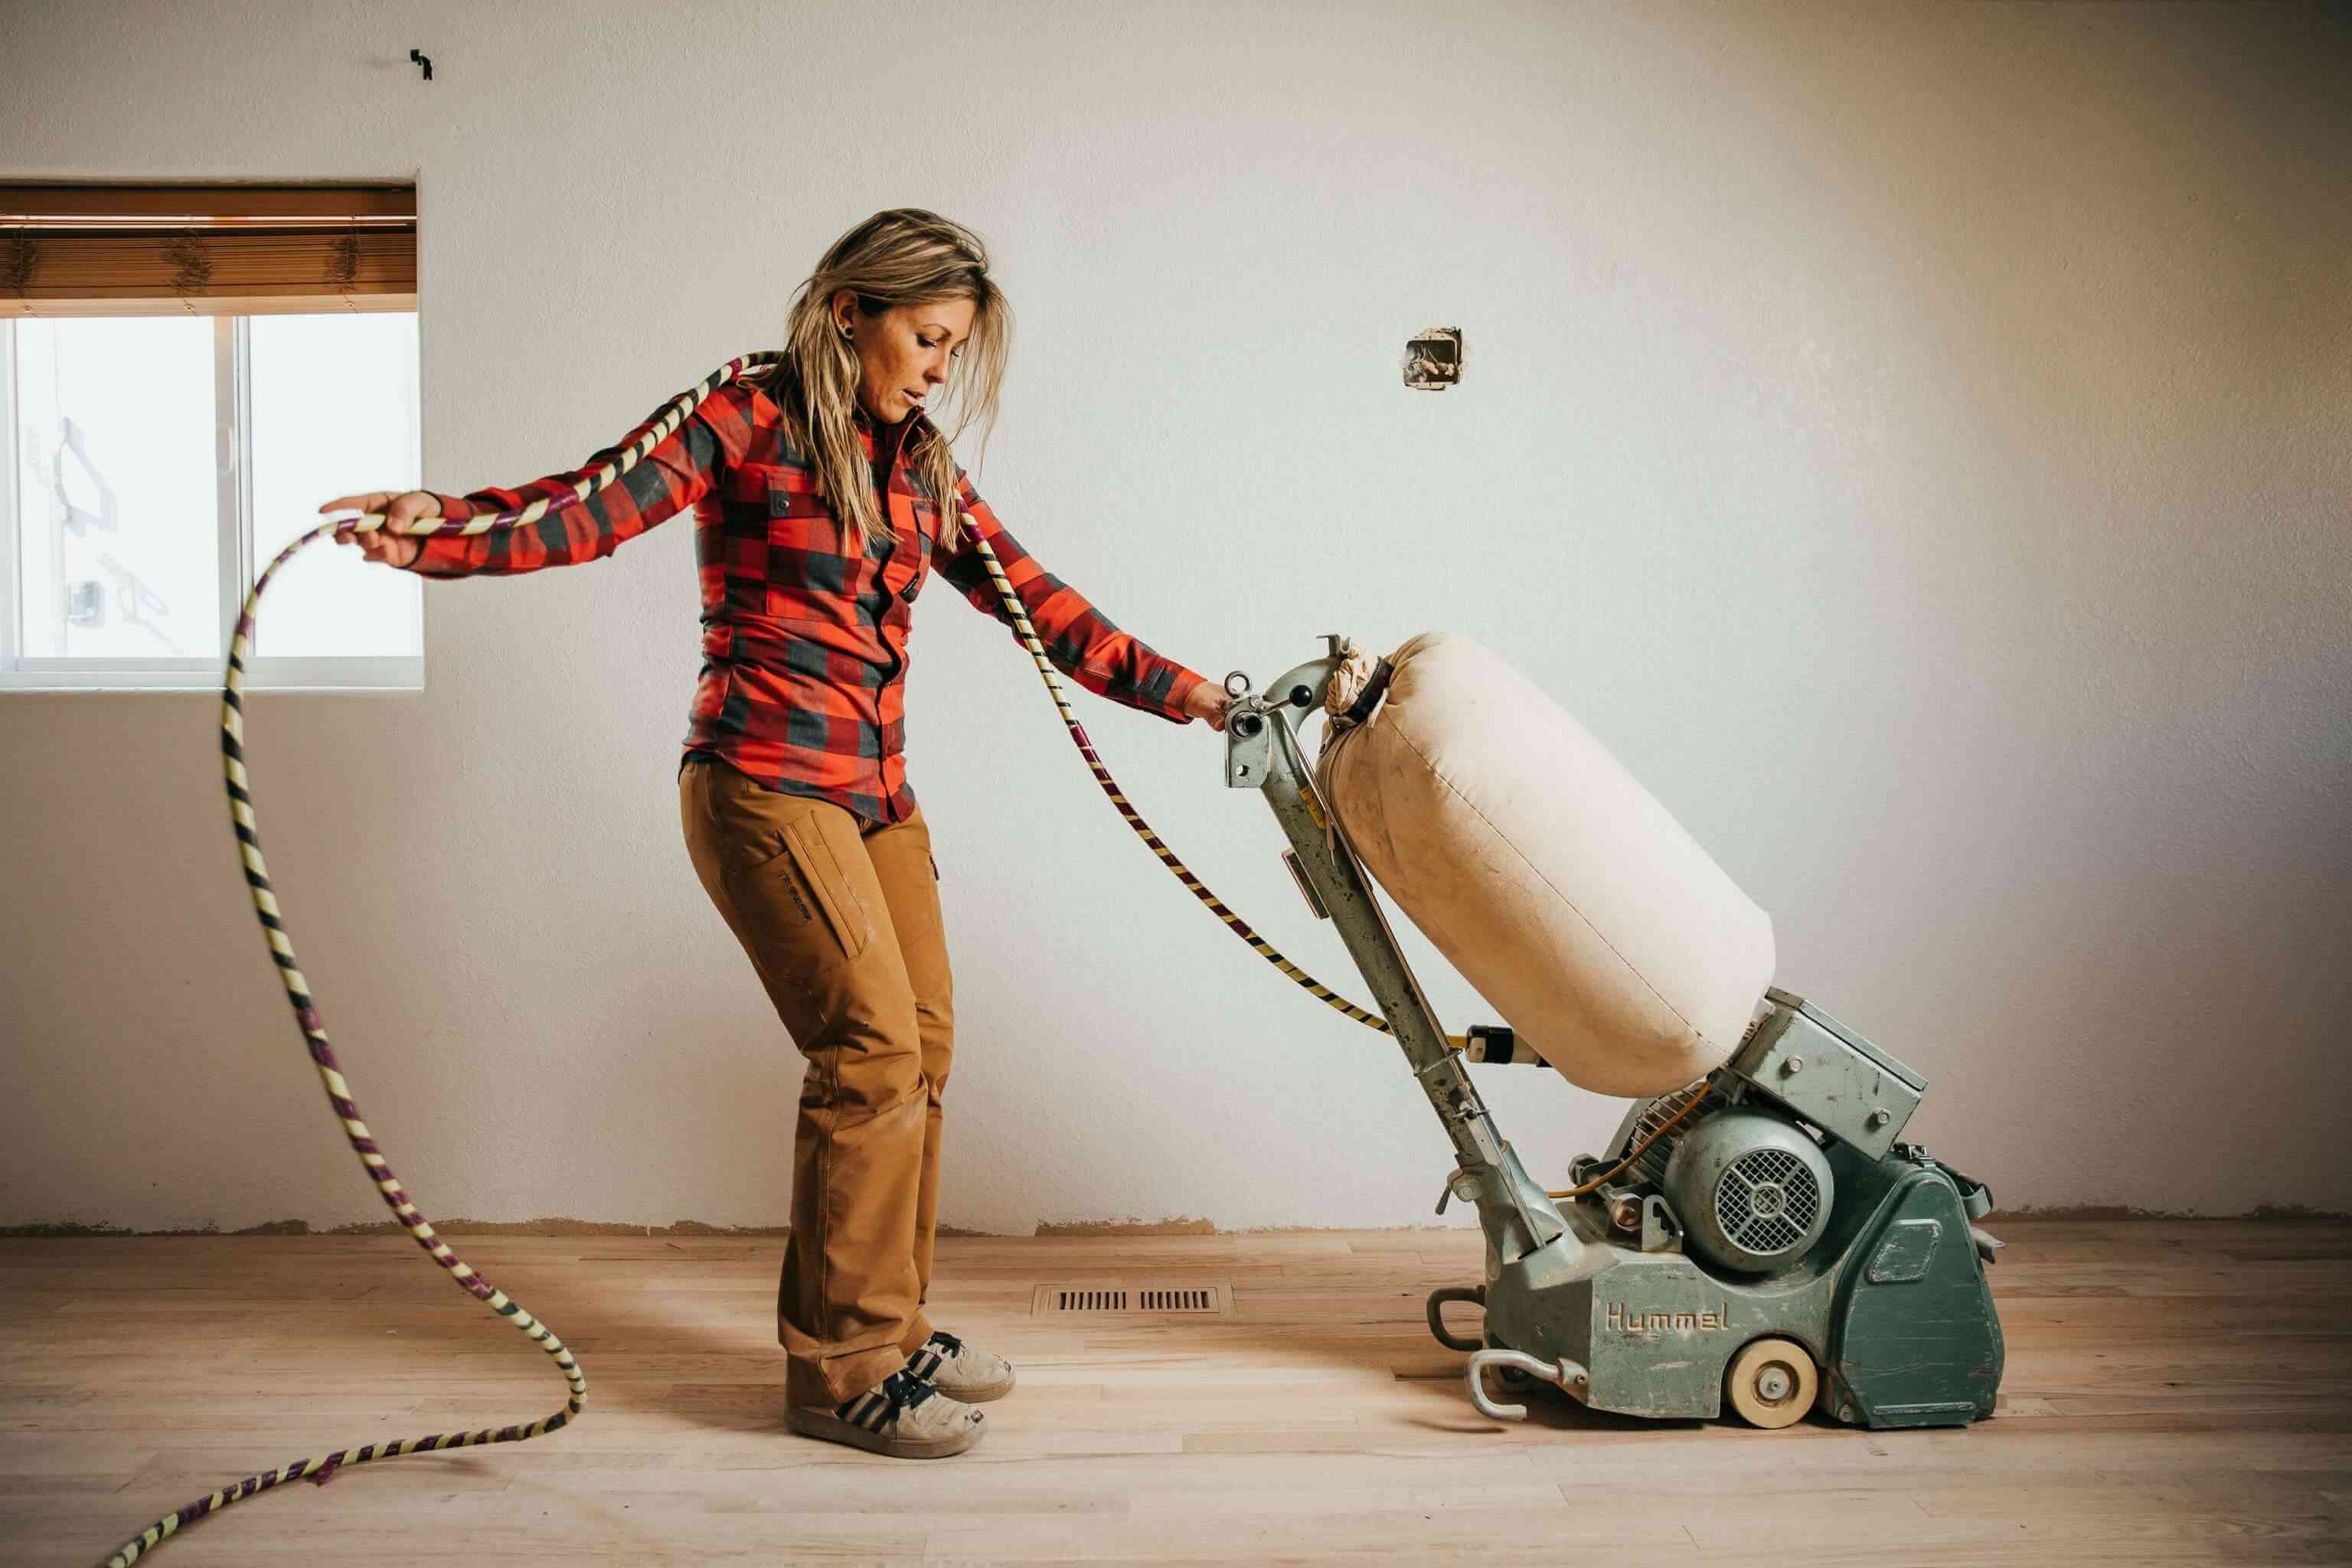 Laurie Bitzkowksi maneja una lijadora de pisos mientras trabaja en un piso de madera en la remodelación de una casa.